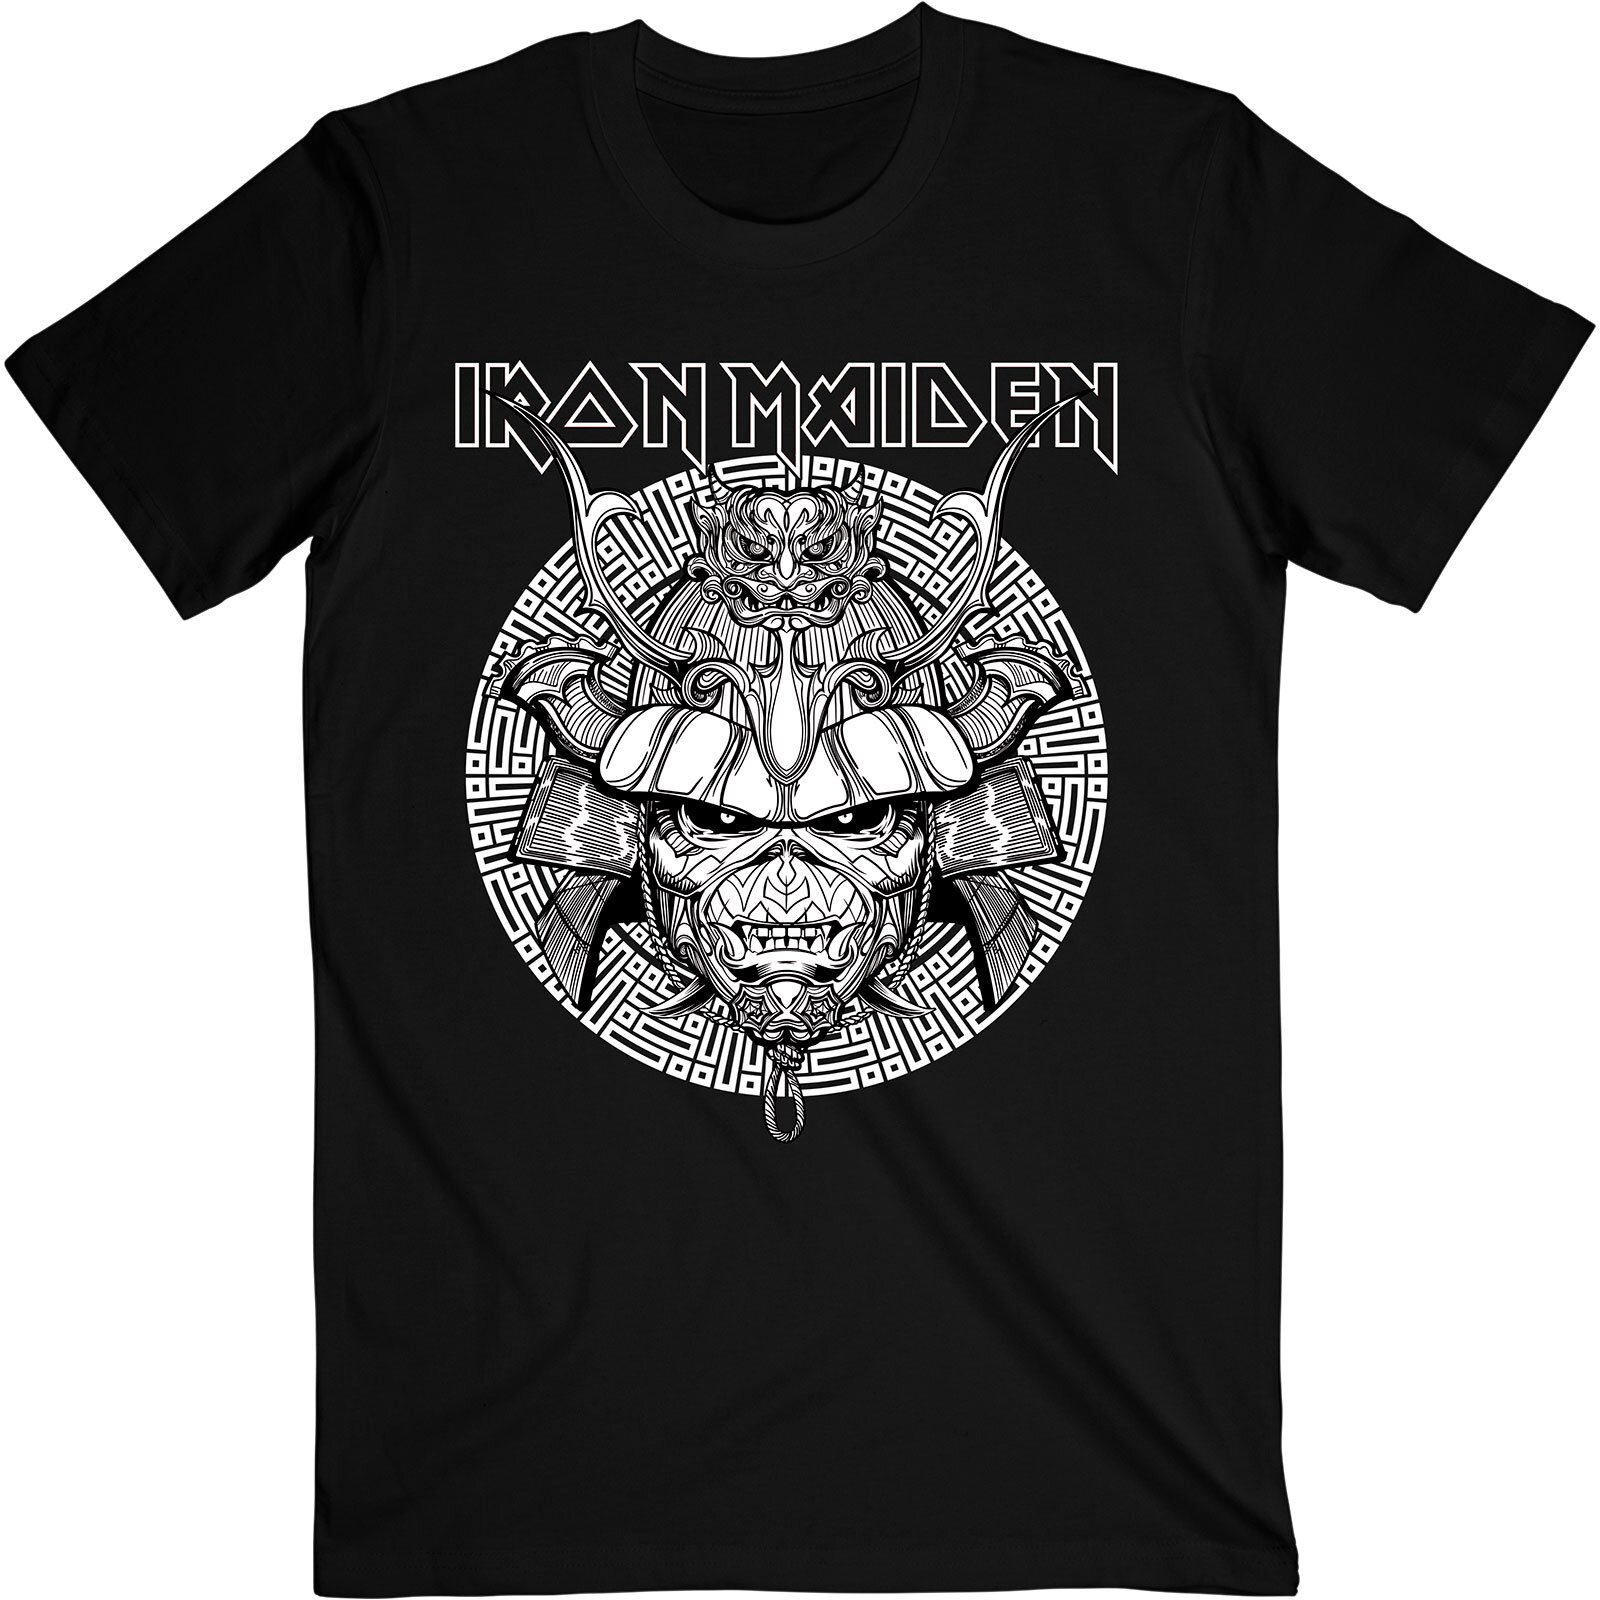 Rockoff T-Shirt Iron Maiden Samurai Graphic White ack Size XL : photo 1